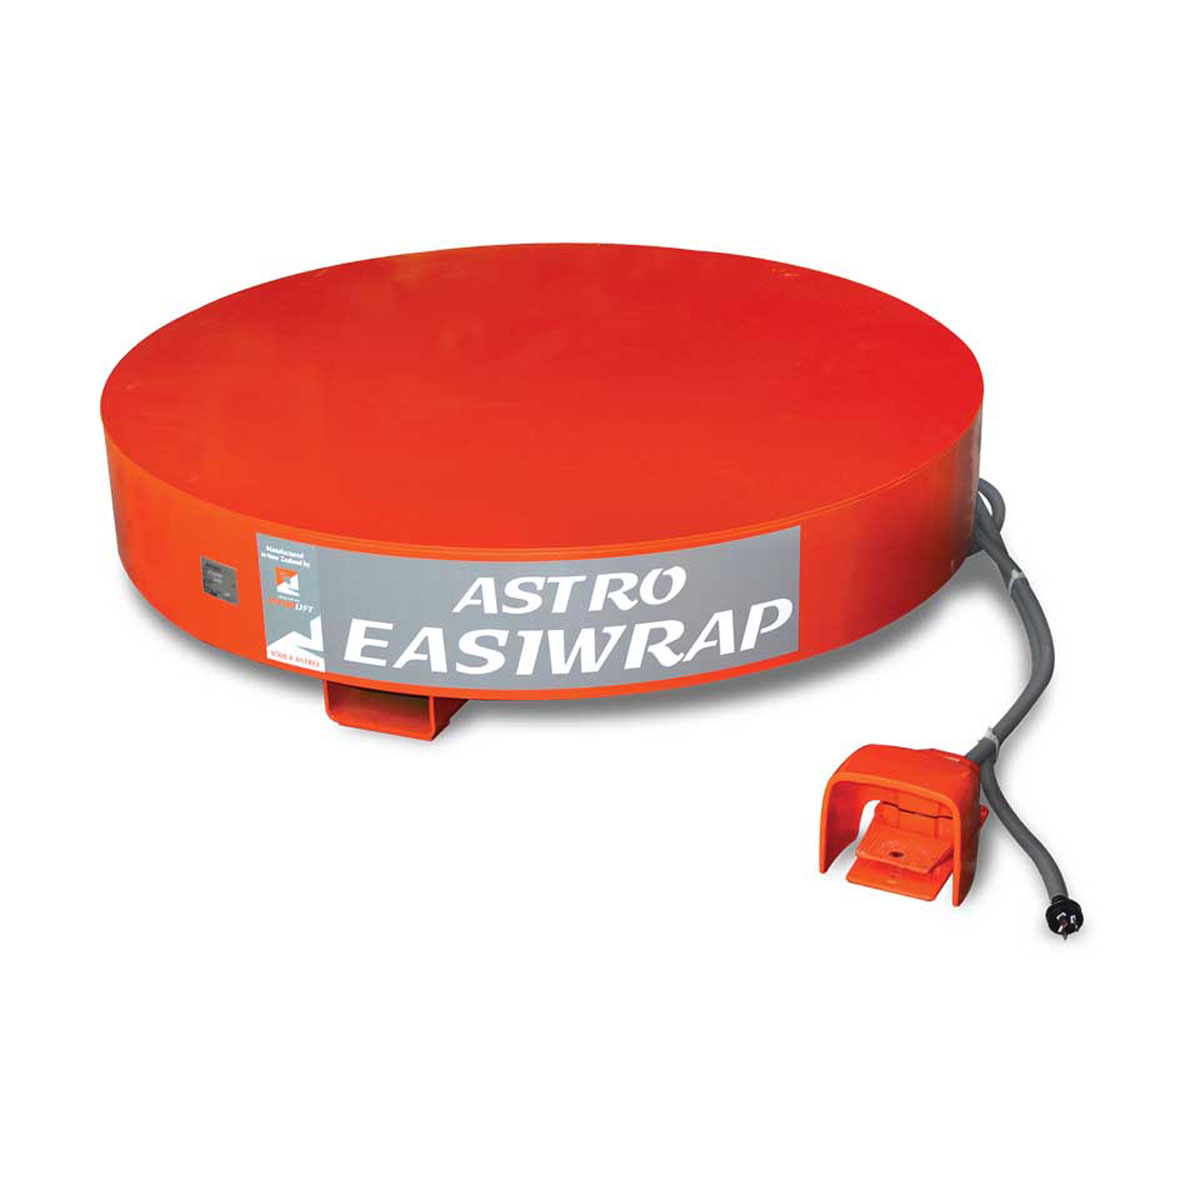 购买托盘转盘(Easiwrap)在托盘包装从Astrolift新西兰伟德国际官方网站